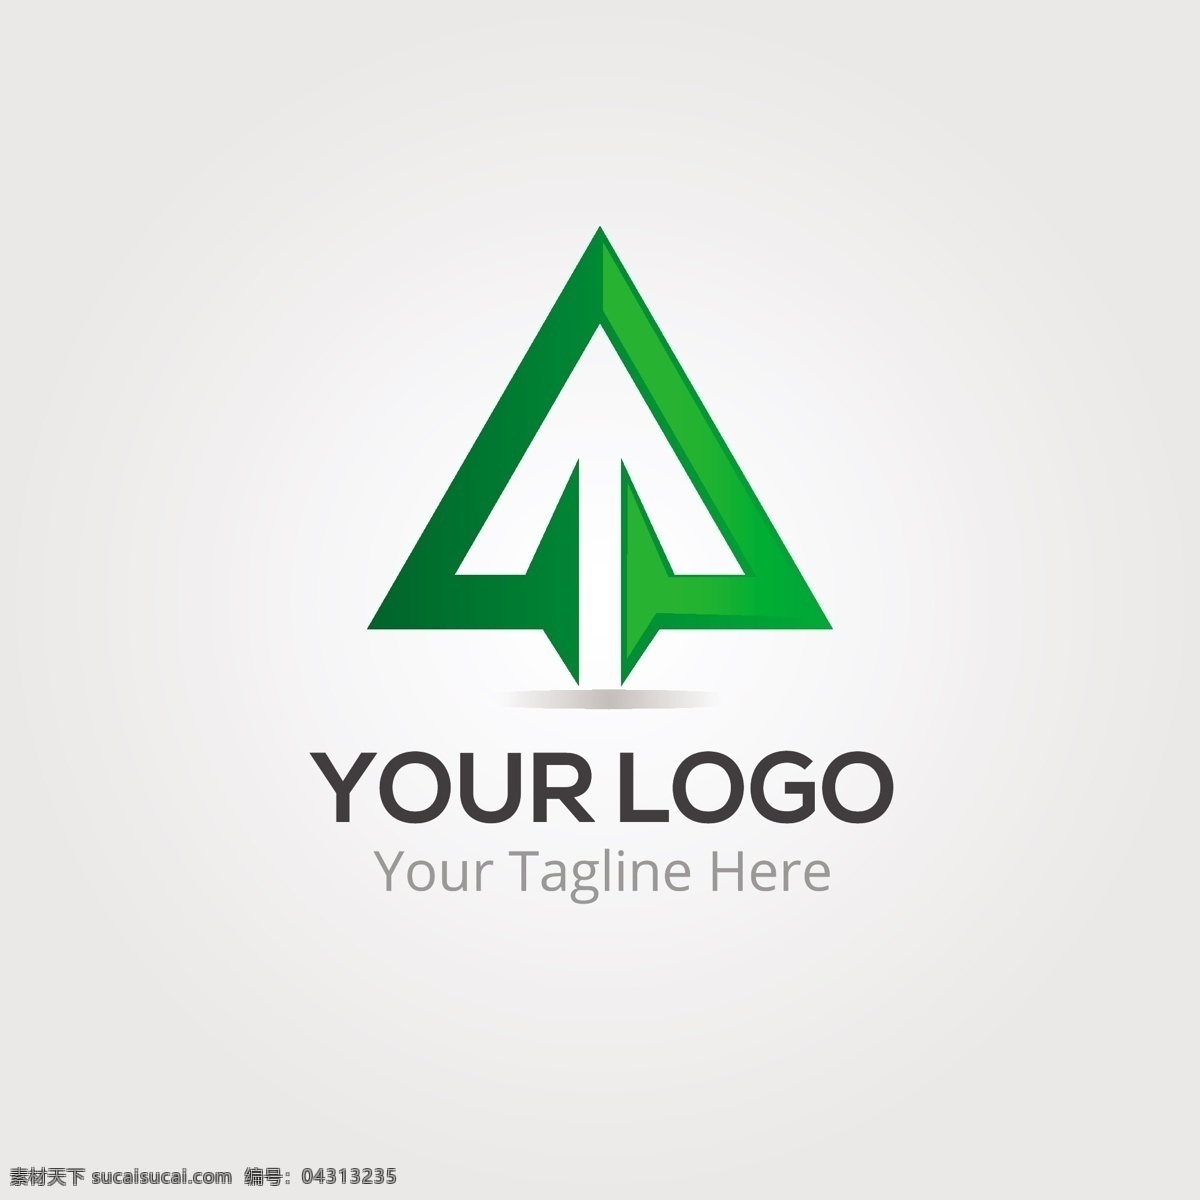 商务 简约 个性 logo 矢量图 矢量 logo设计 创意 图形 商标设计 企业logo 公司logo 行业标志 标志图标